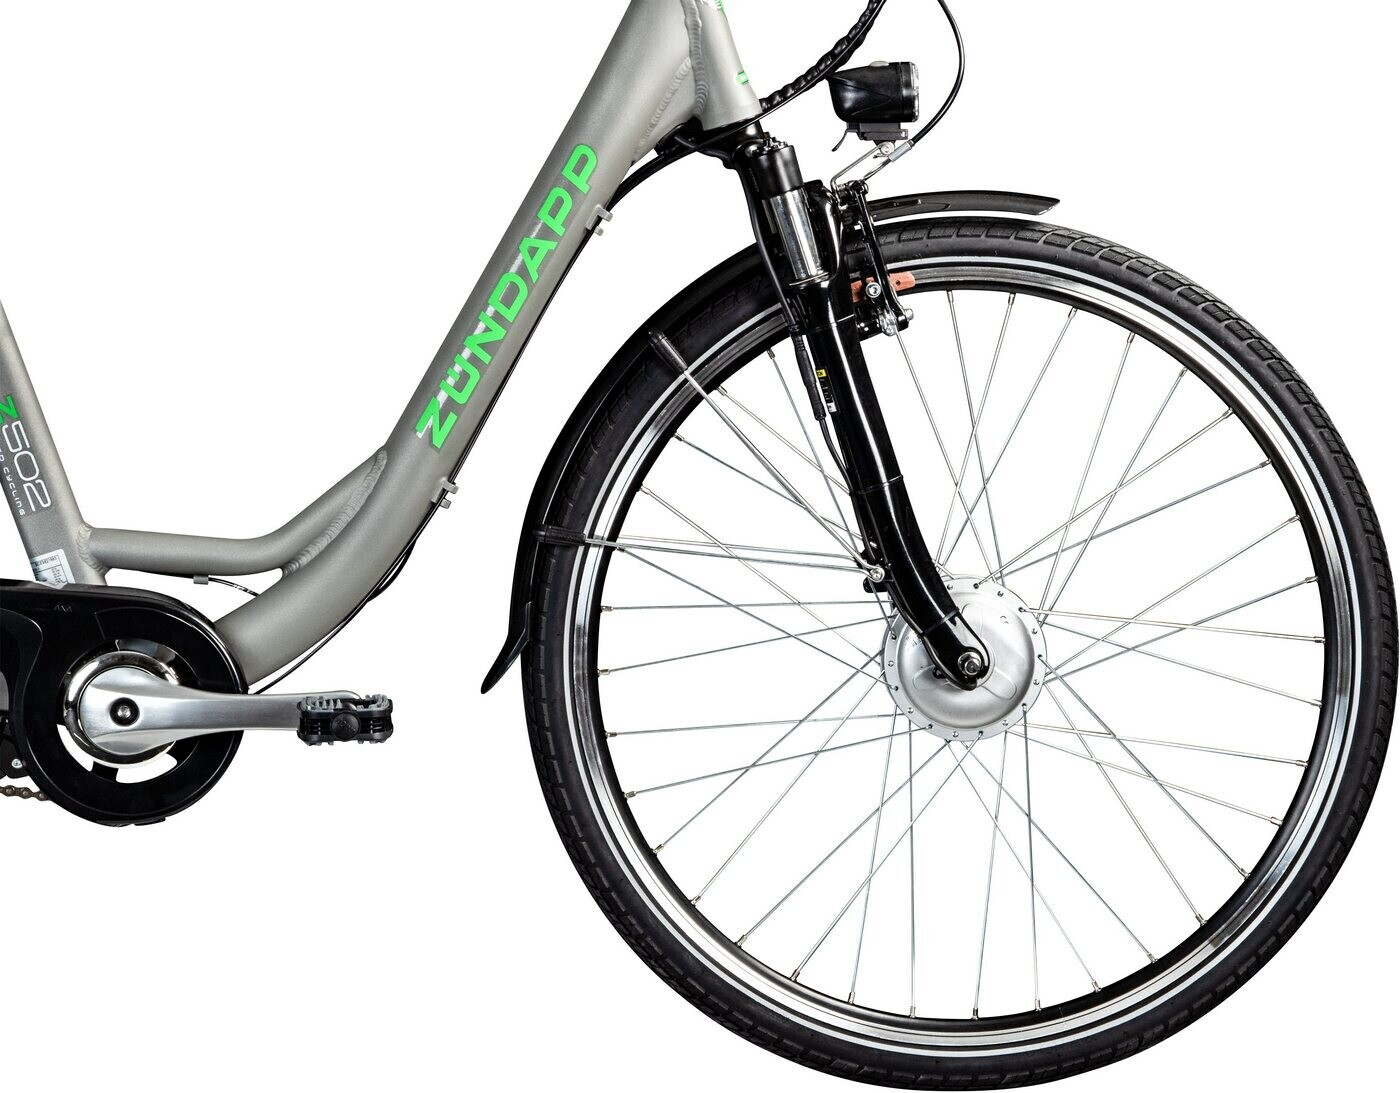 Zündapp Z502 E-Bike grau/grün ab 939,00 €